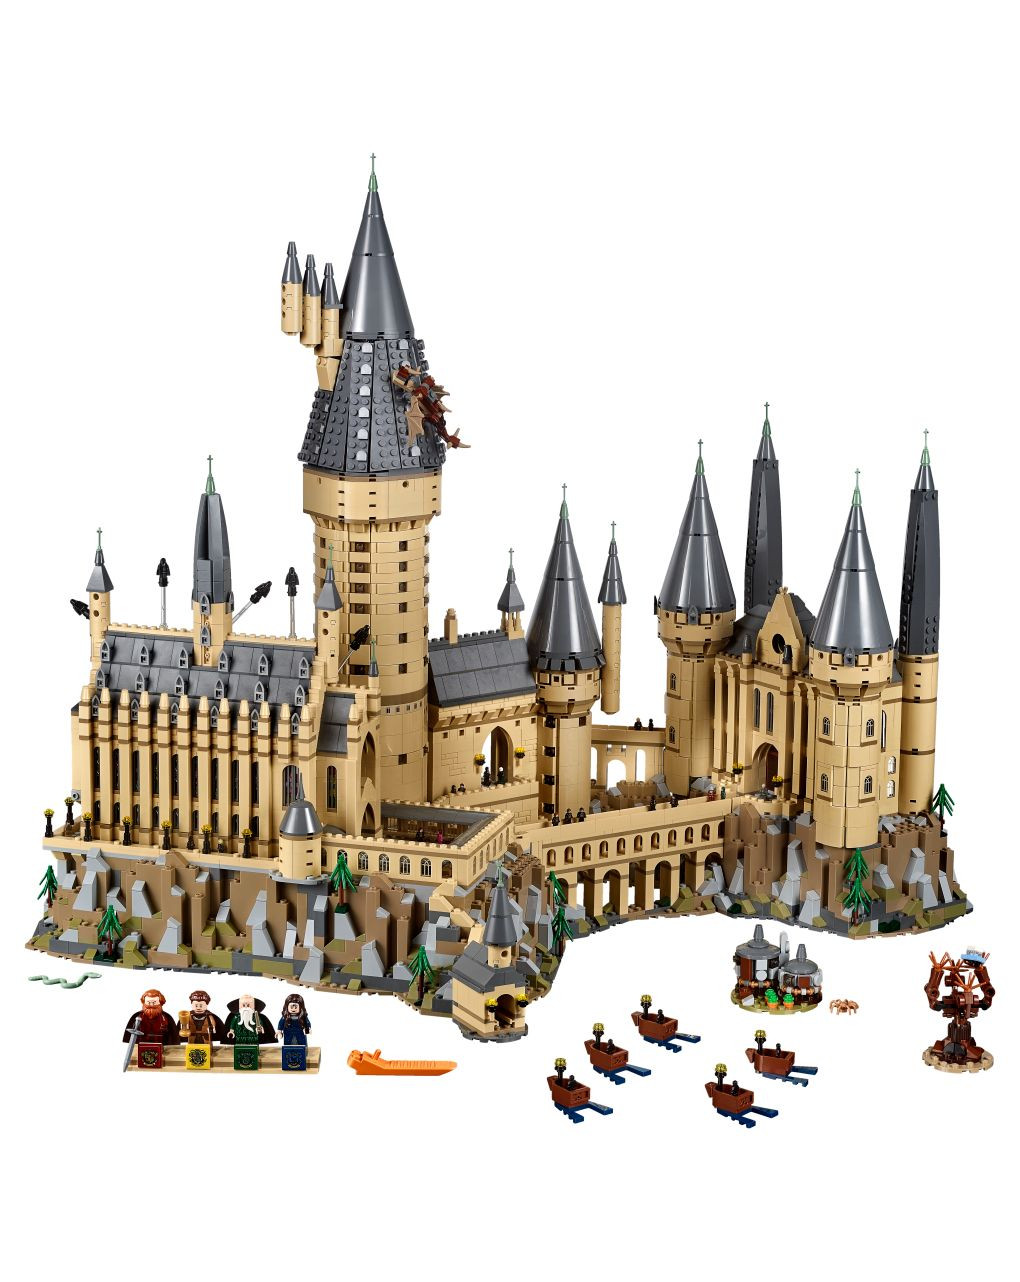 Lego harry potter tm - castelo hogwarts ™ - 71043 - LEGO